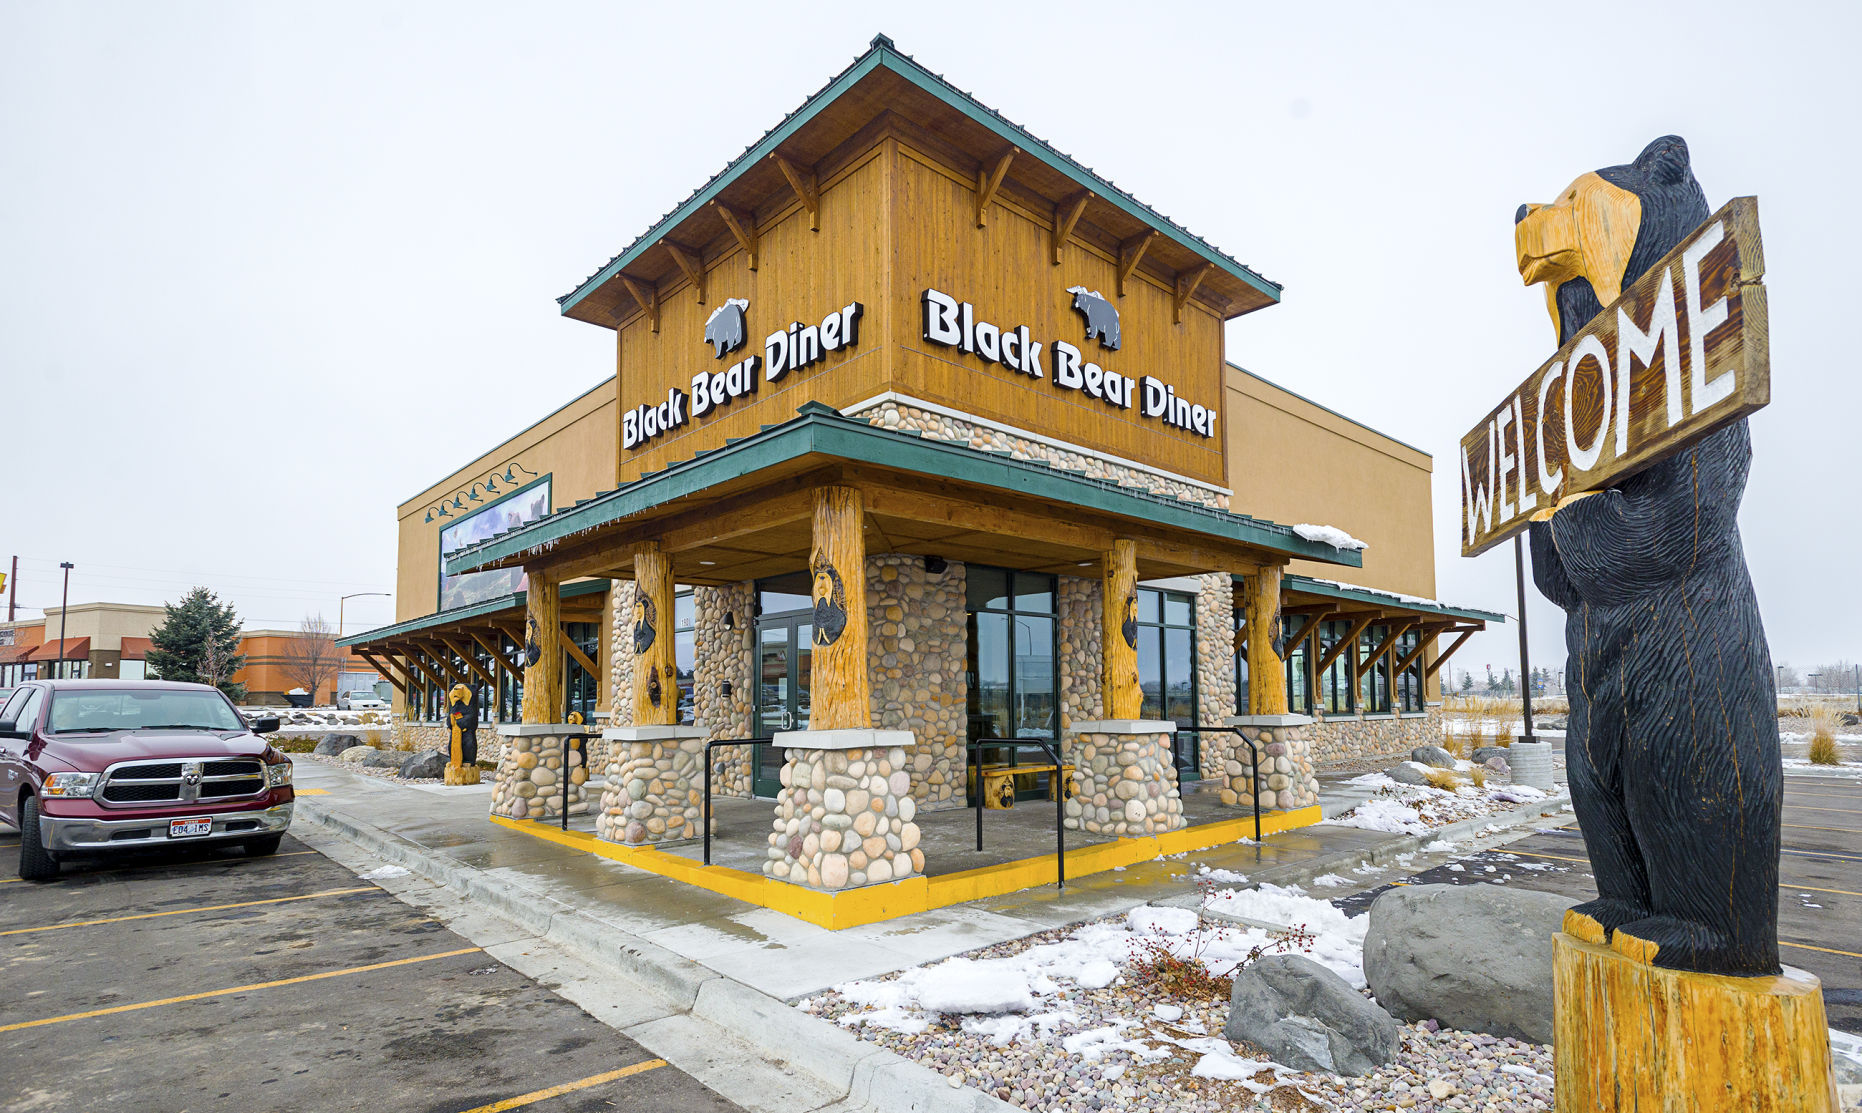 all black bear diner locations